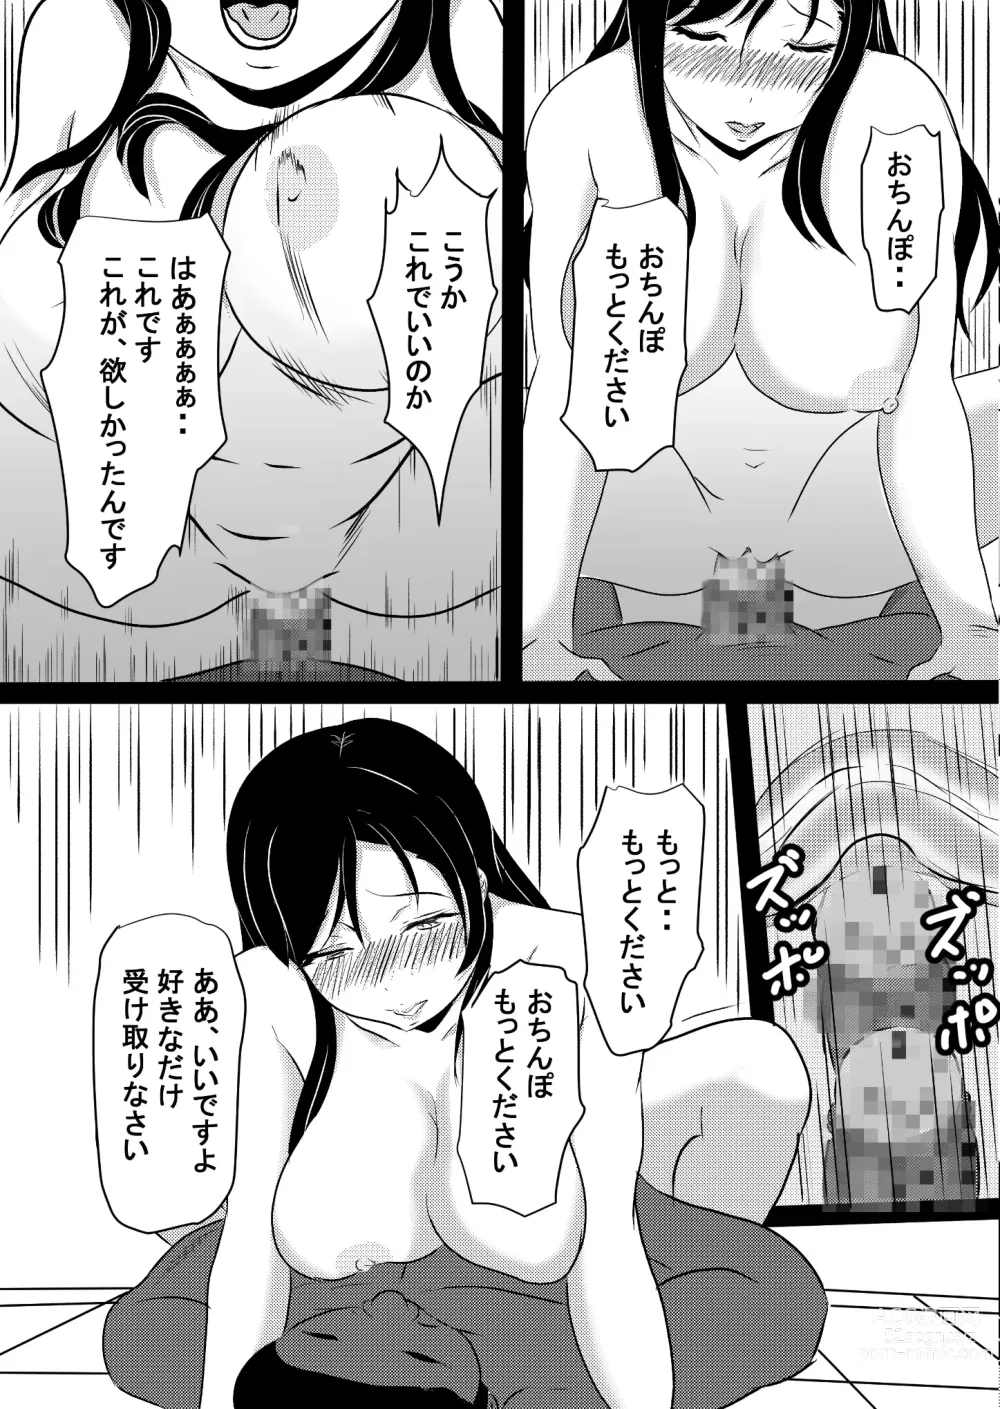 Page 34 of doujinshi Onna Ero Mangaka Tachibana Kyouko wa Yume o Miru